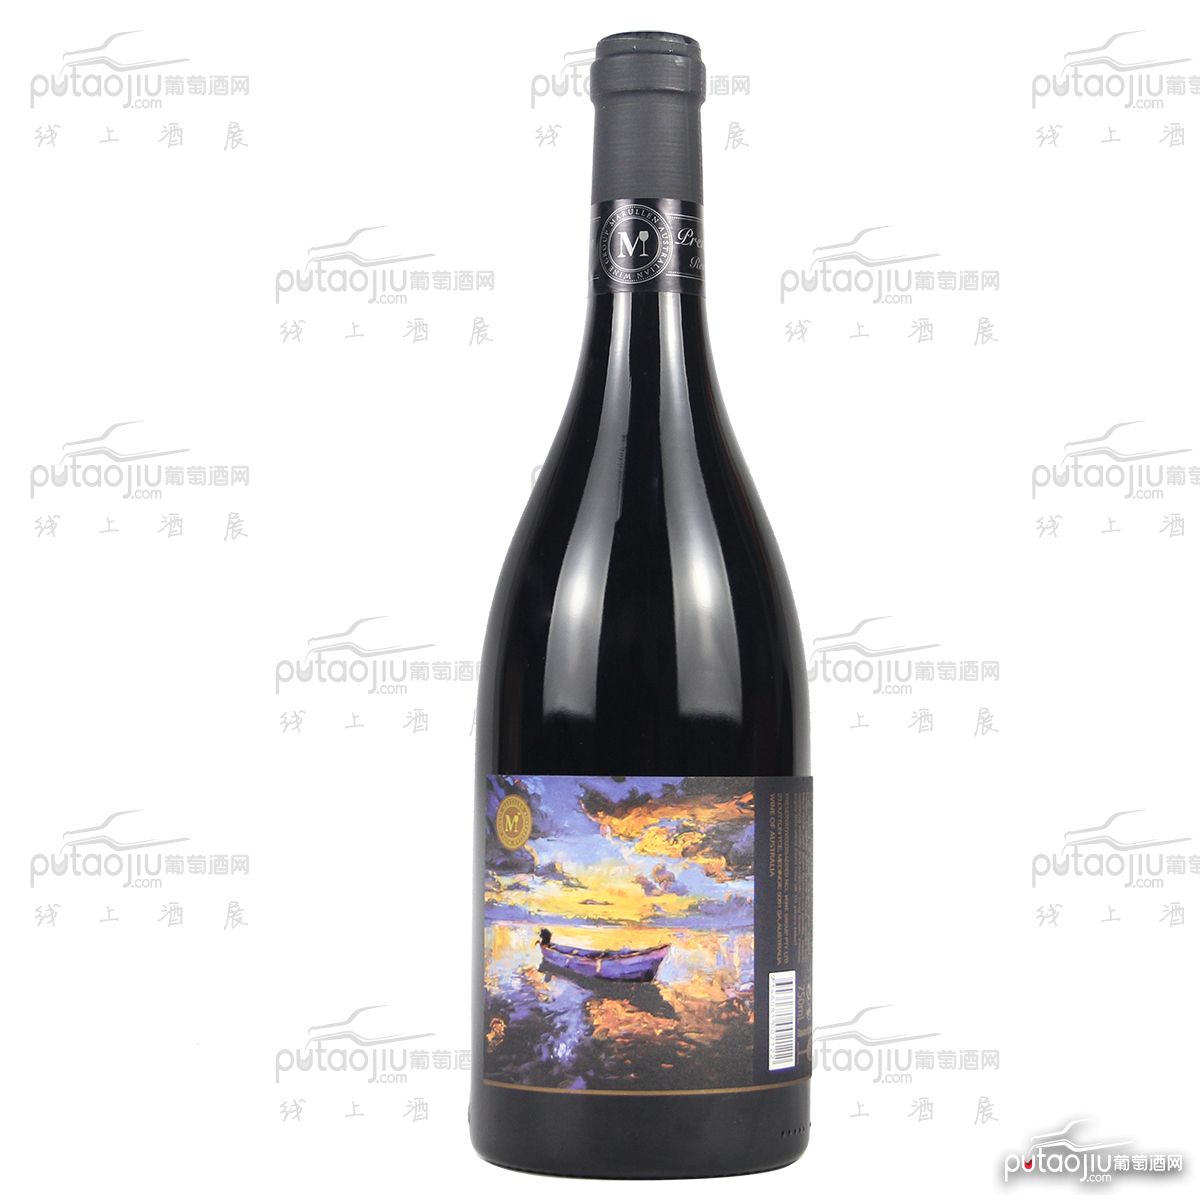 澳大利亚麦克拉伦谷产区盛宴酒庄萬瑞涞赤霞珠印象. 融和干红葡萄酒红酒